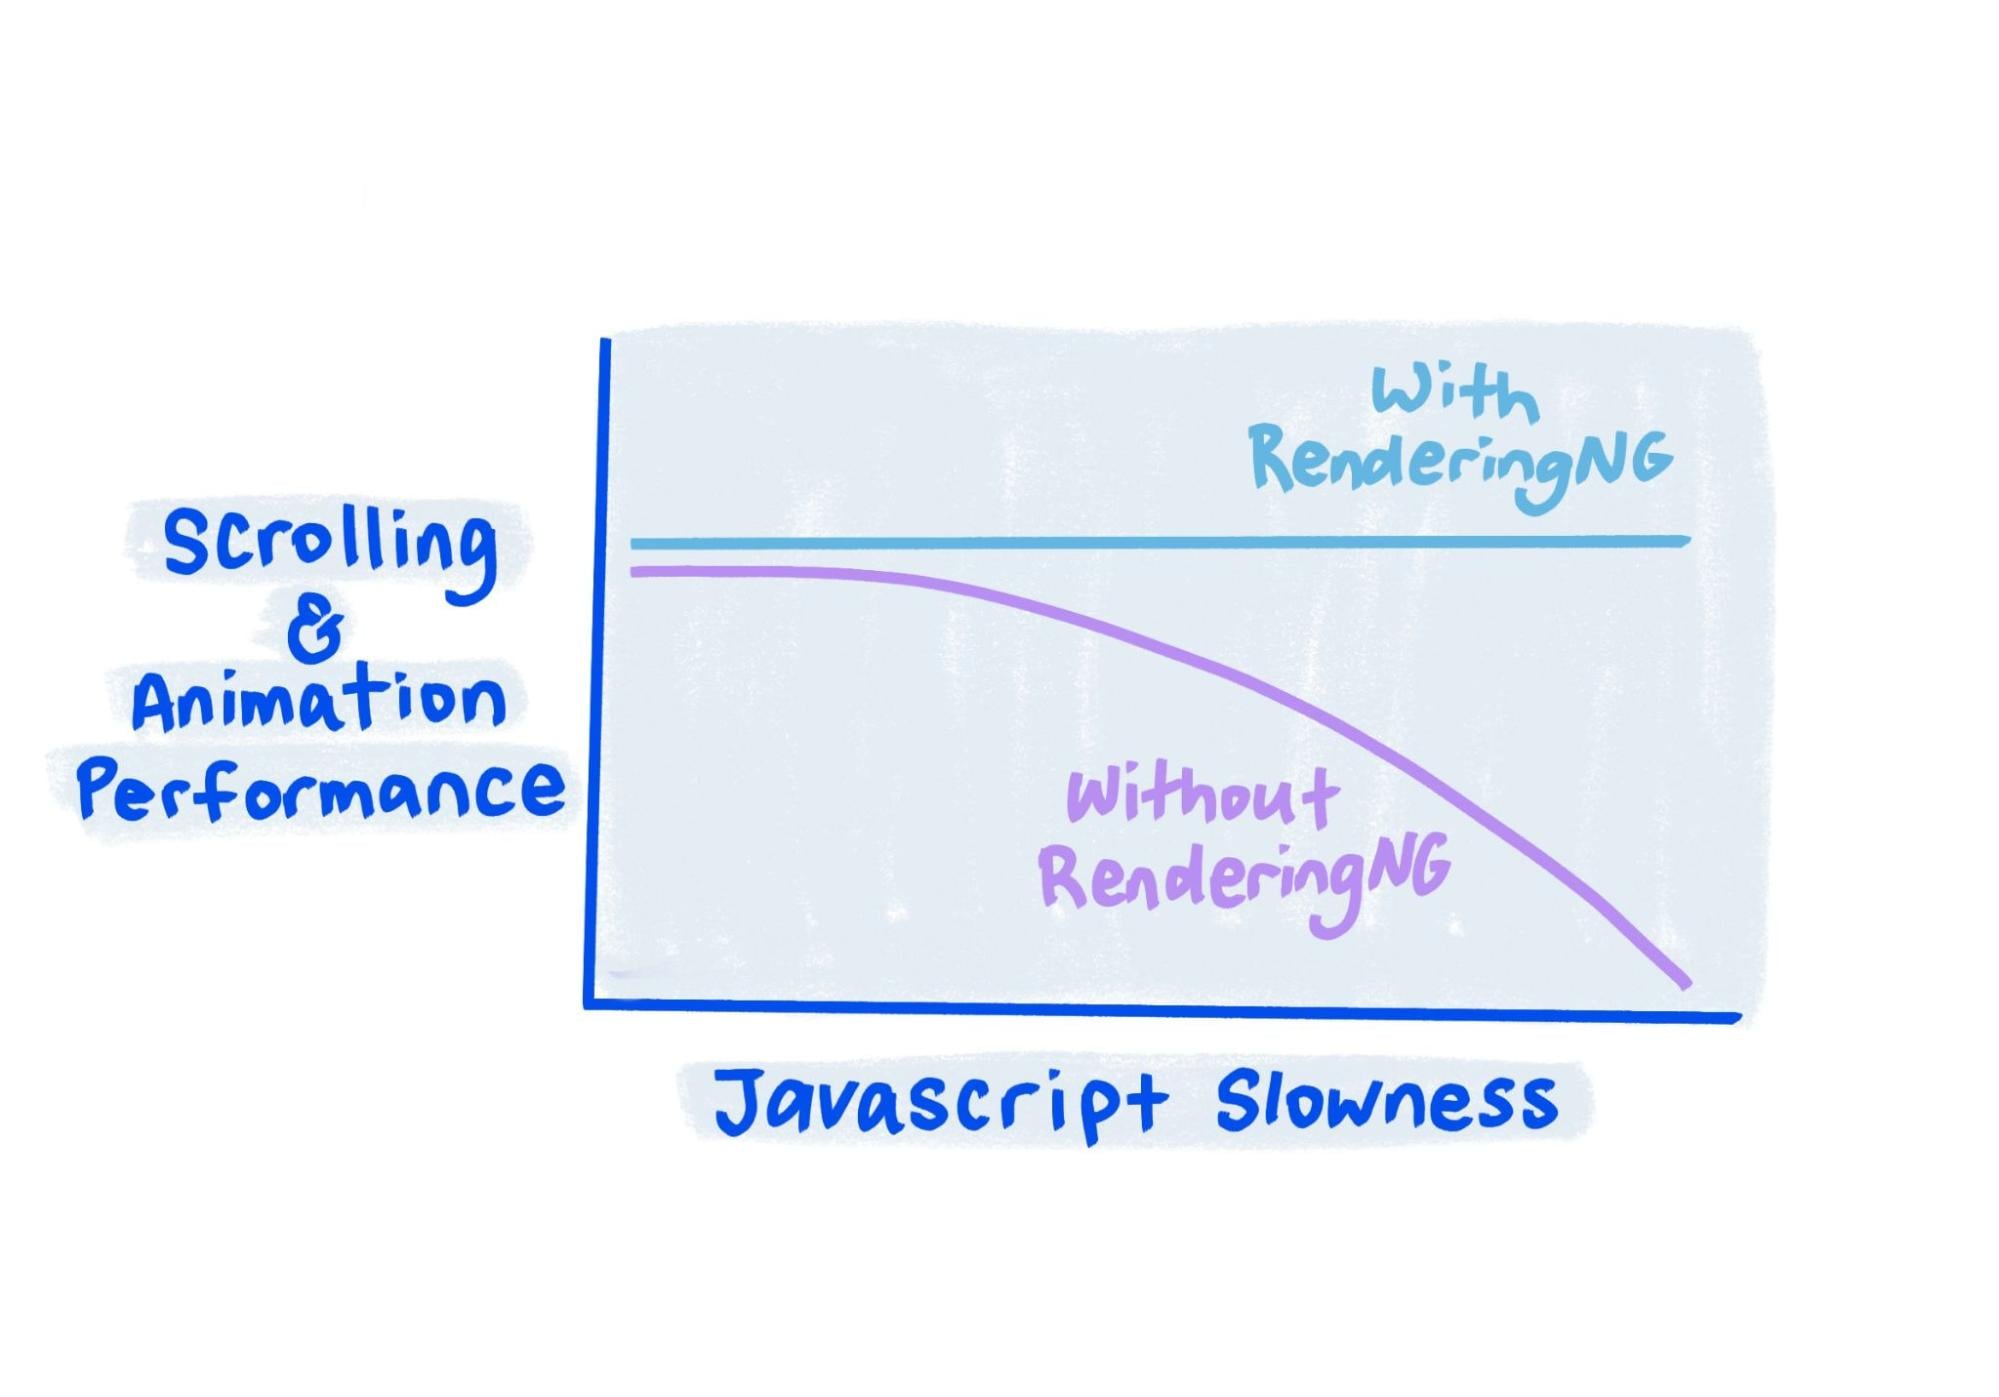 O esboço mostra que, com o RenderingNG, o desempenho permanece estável mesmo quando o JavaScript está muito lento.